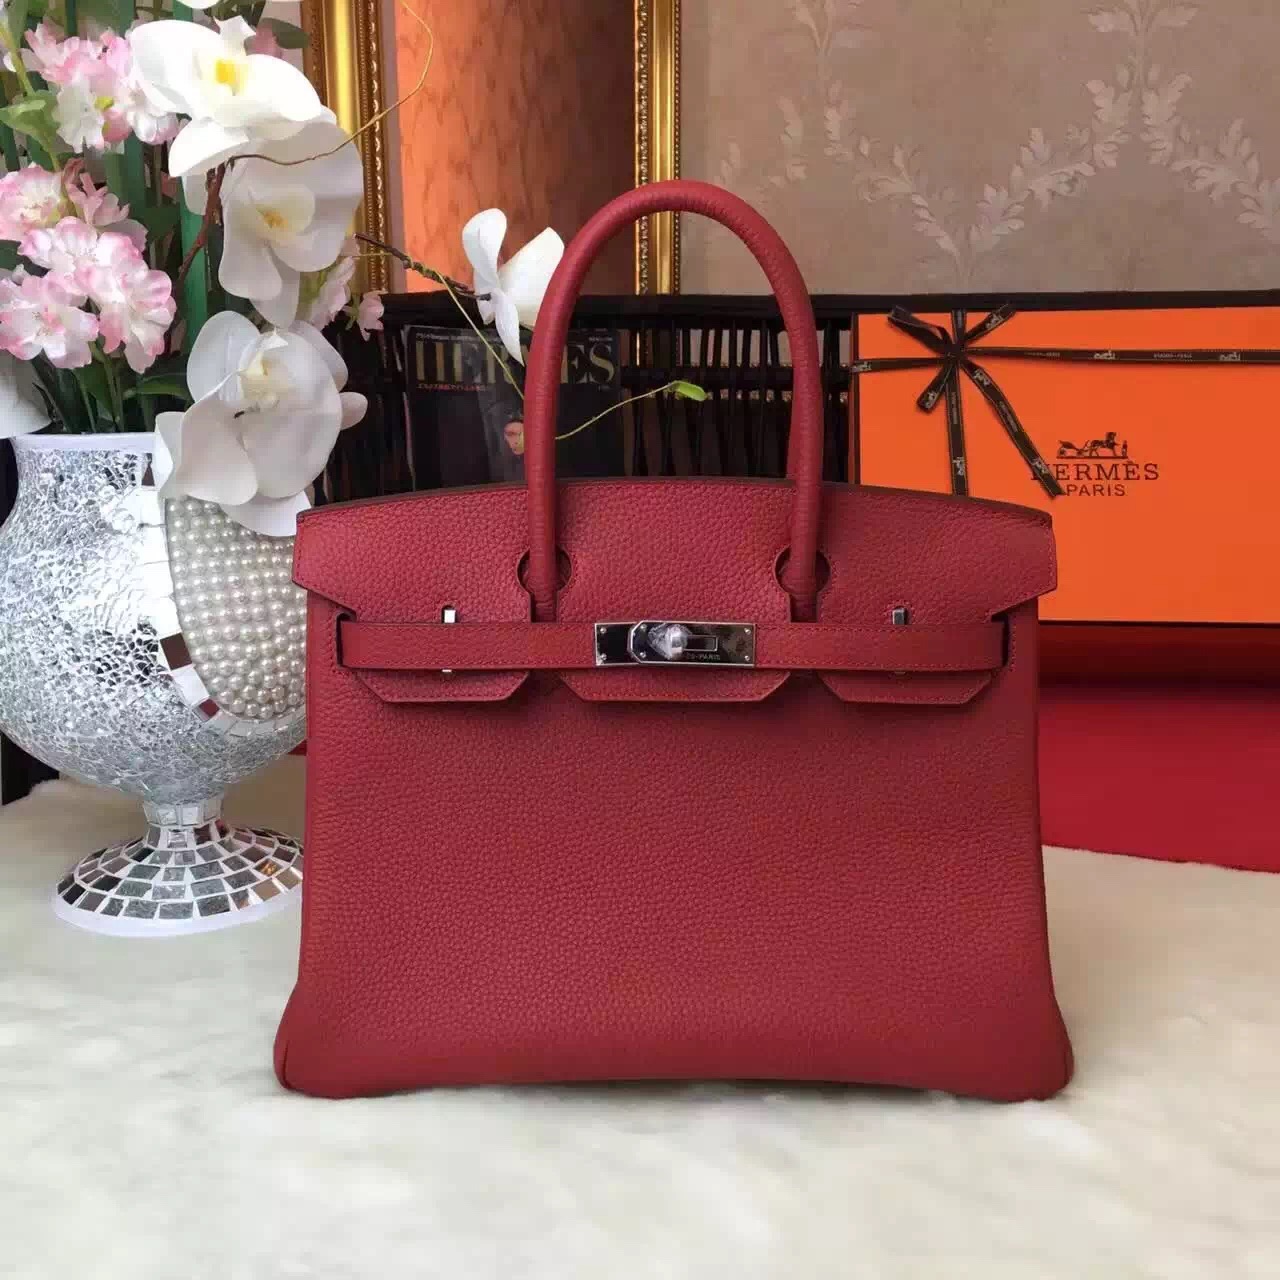 Hermes wine top leather Birkin handbags